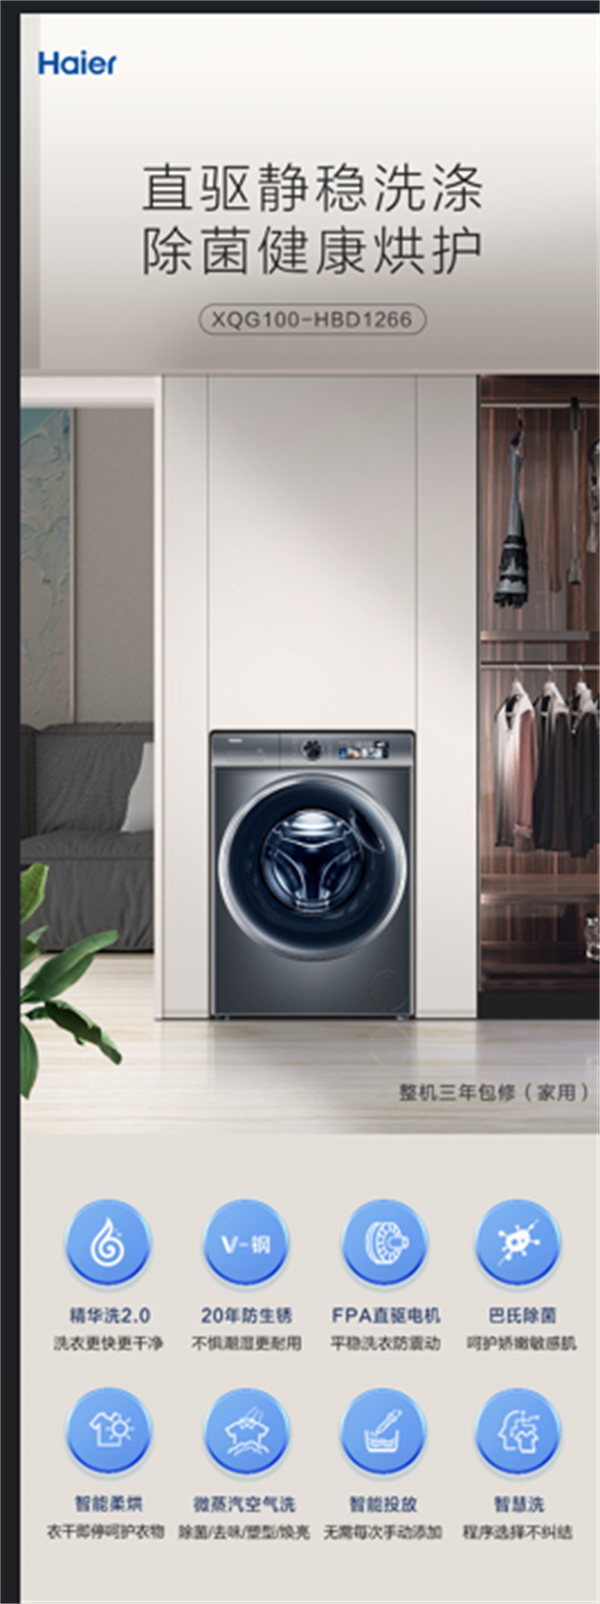  海尔滚筒洗衣机XQG100-HBD1266 